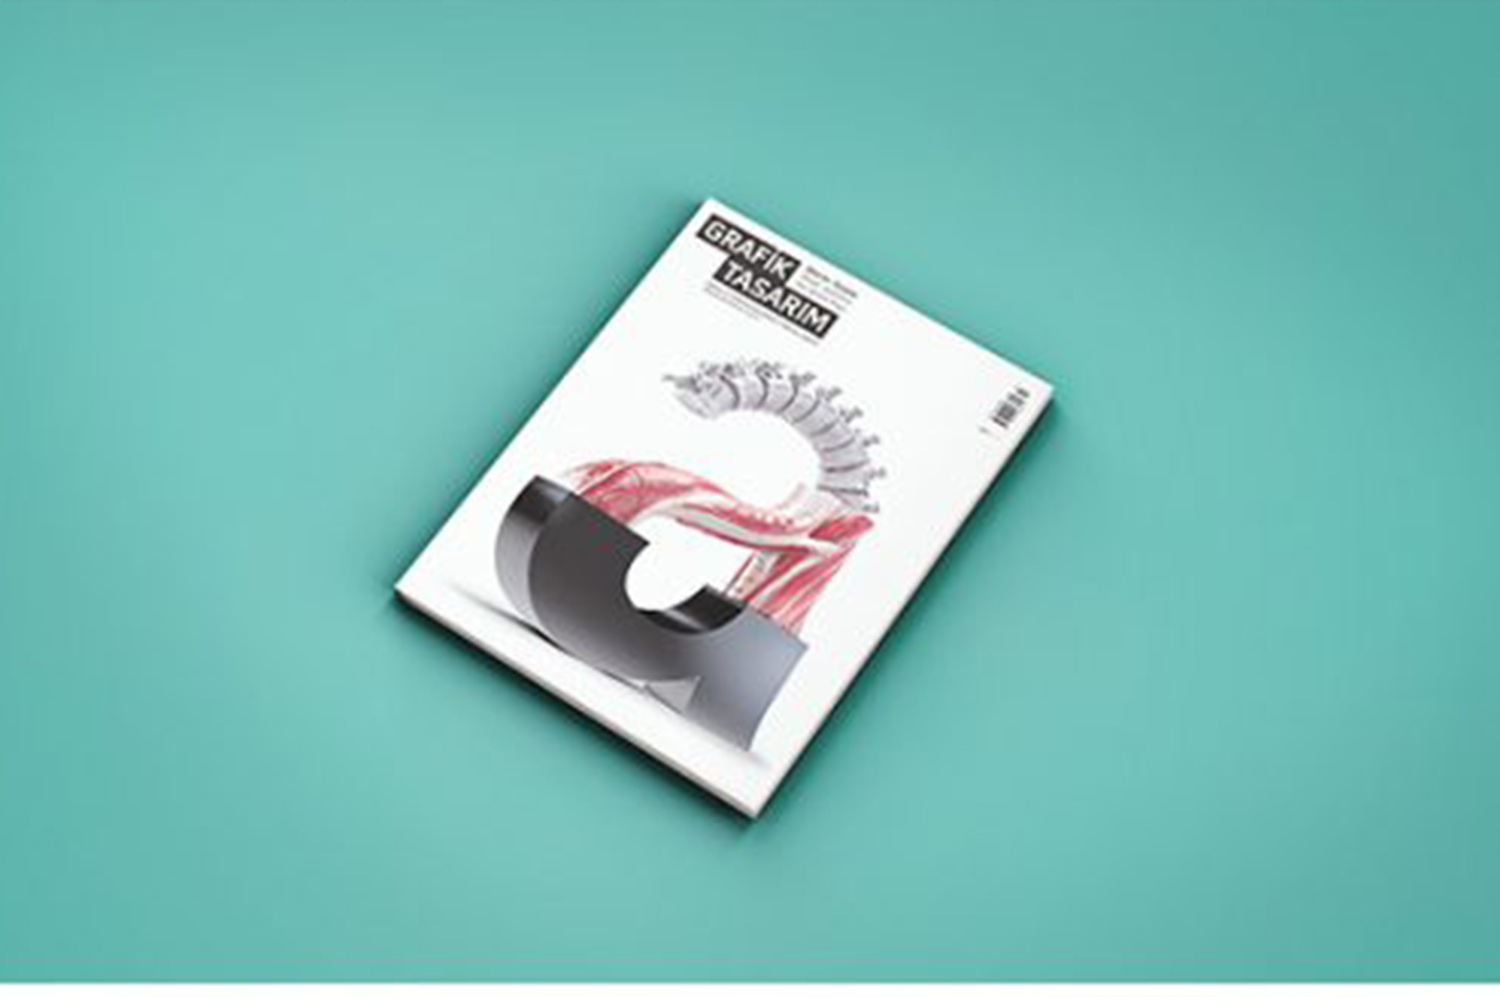 Magazine Mockups Kit Free Download - Kit Free Download